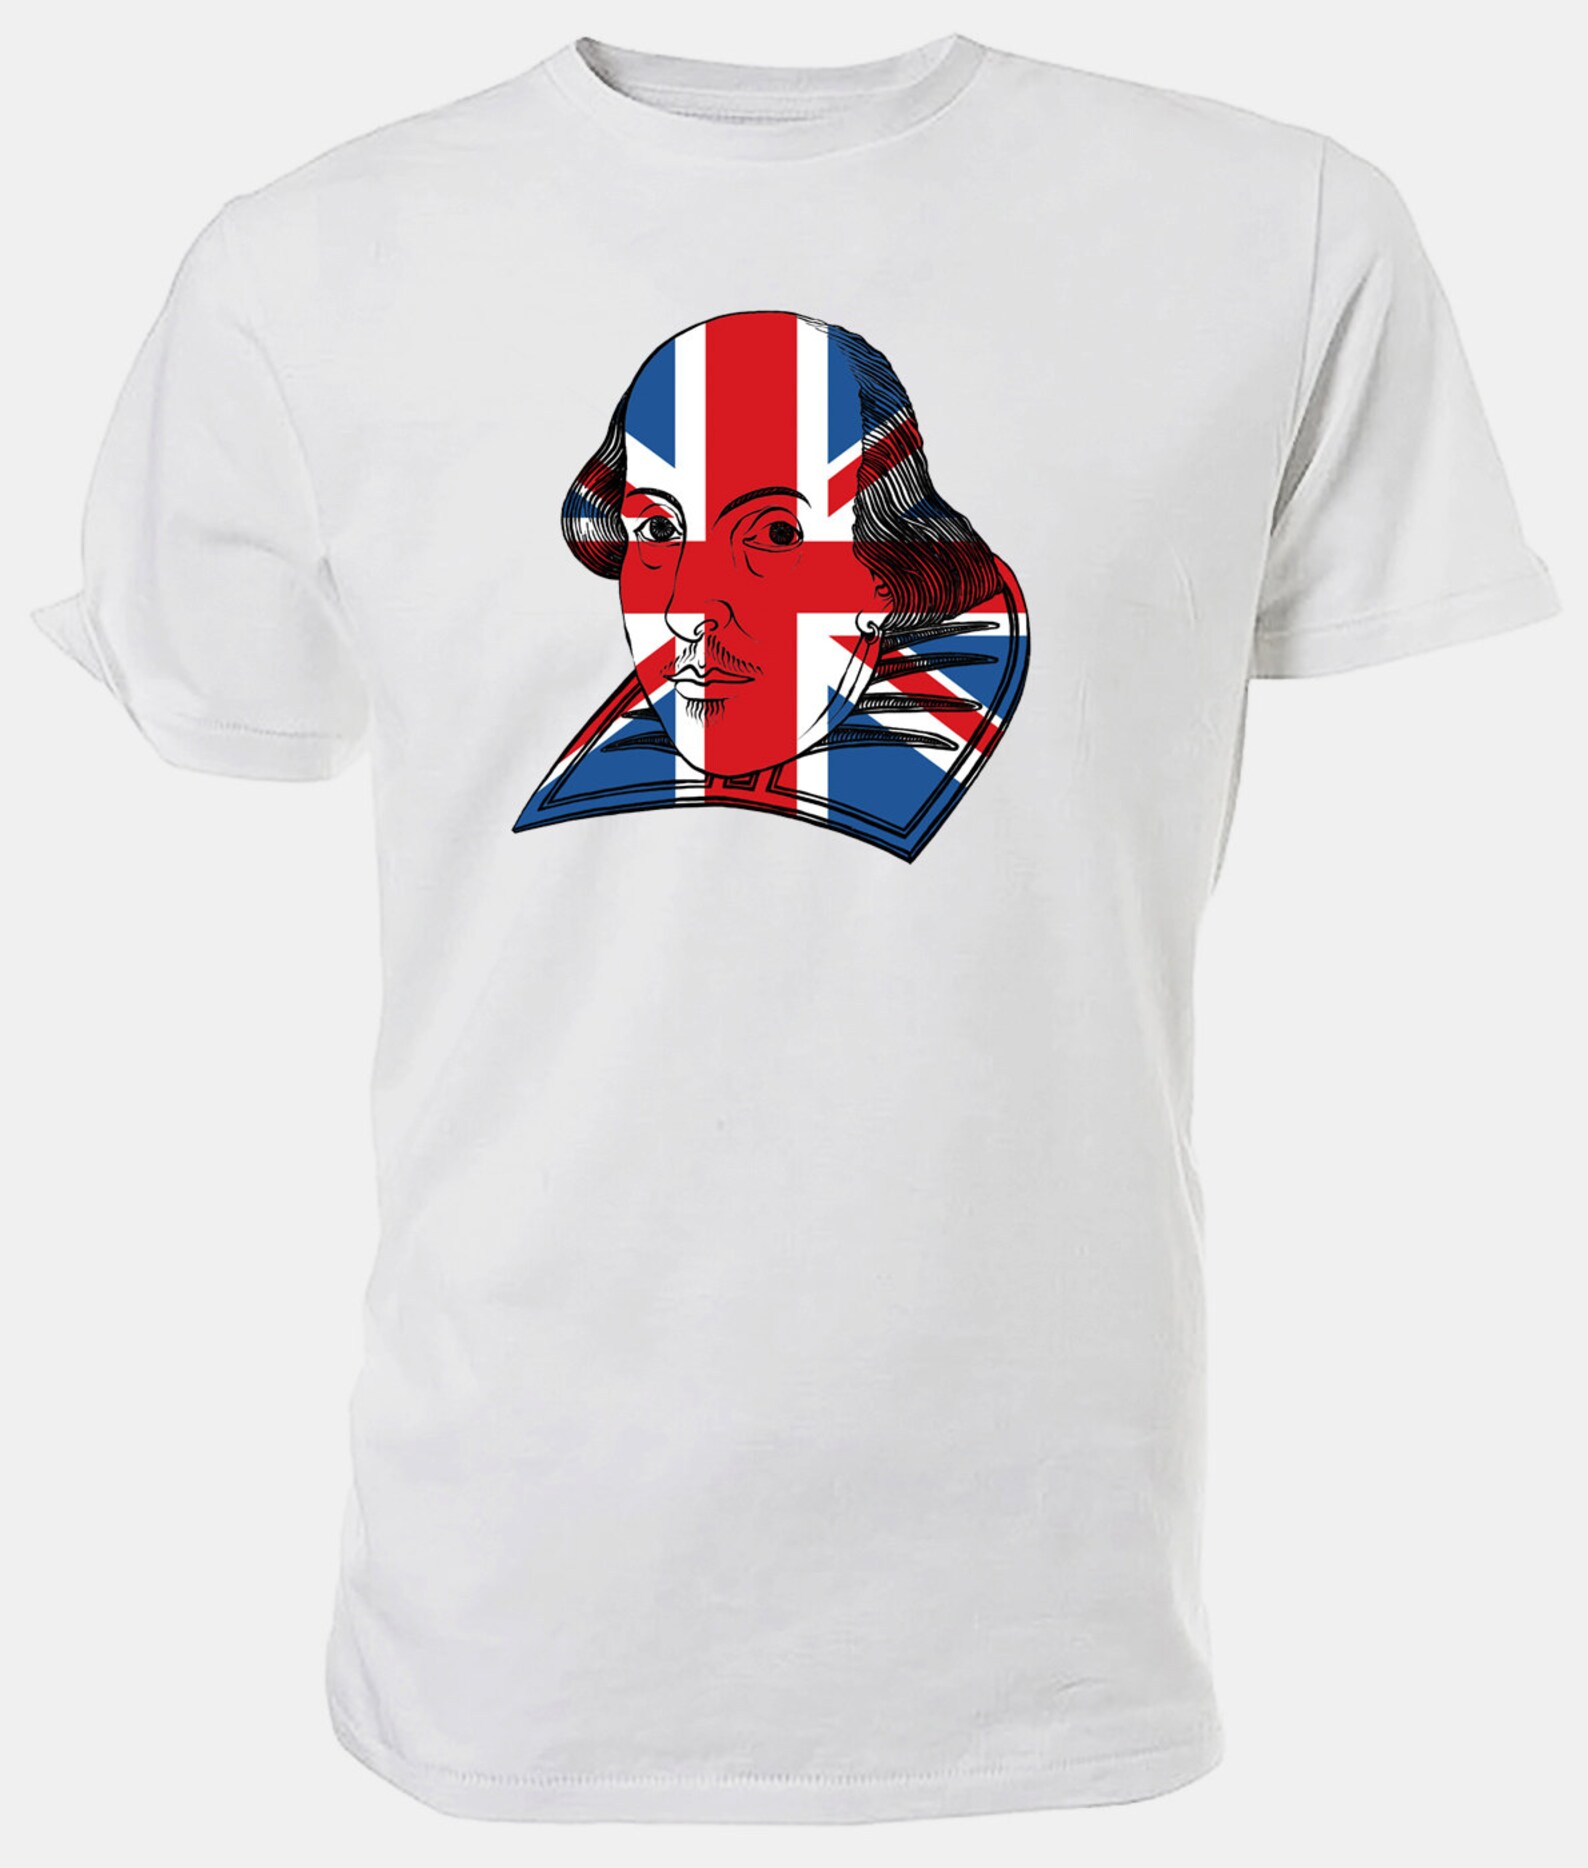 Best of British Union Jack Flag William Shakespeare T Shirt. - Etsy